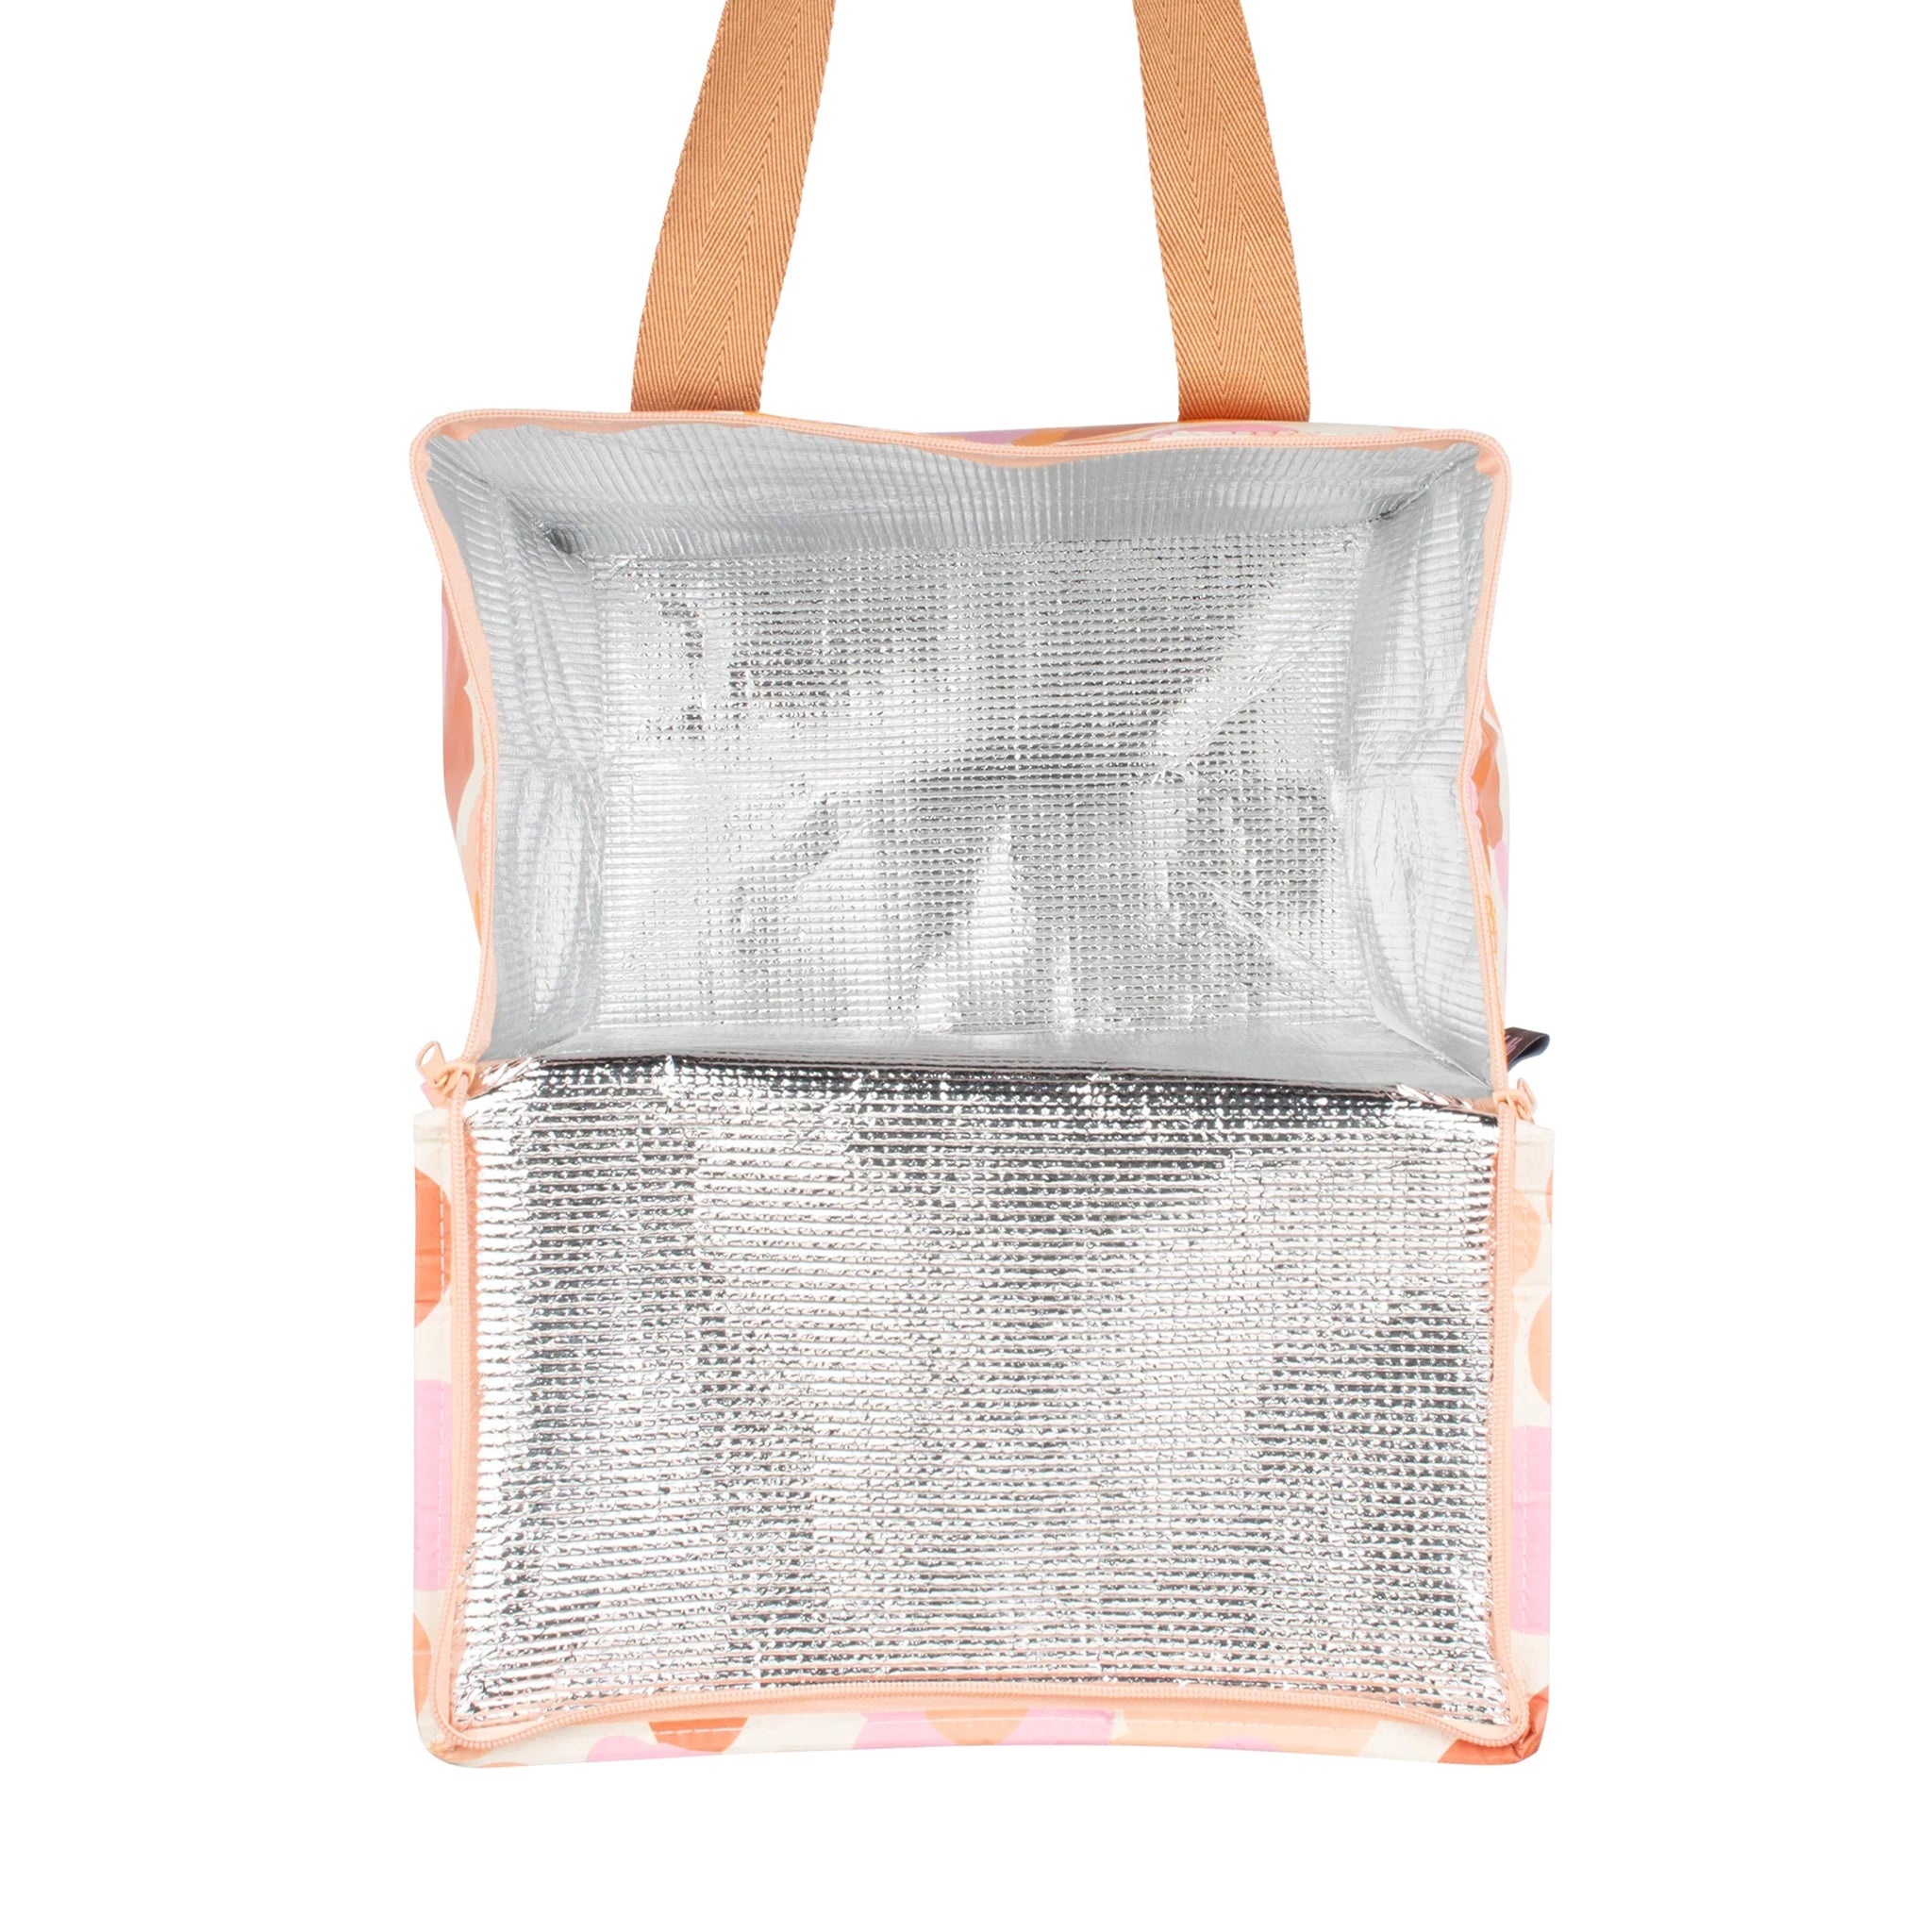 An orange pink and ivory floral print cooler bag.